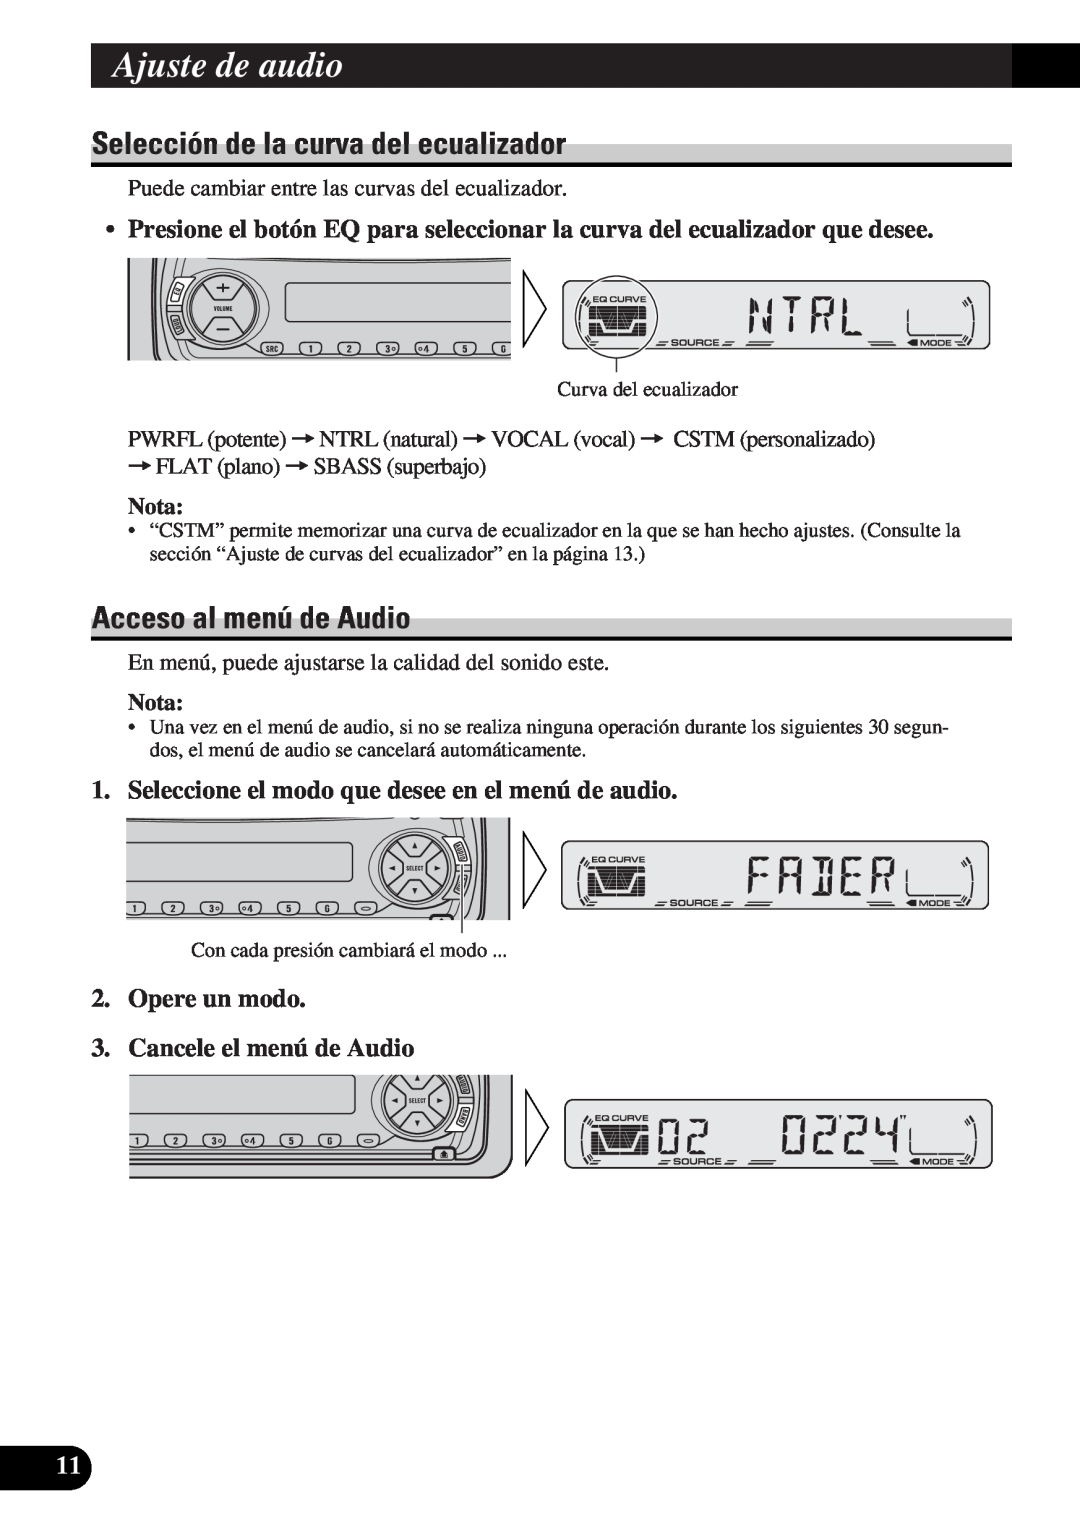 Pioneer DEH-12 operation manual Ajuste de audio, Selección de la curva del ecualizador, Acceso al menú de Audio, Nota 